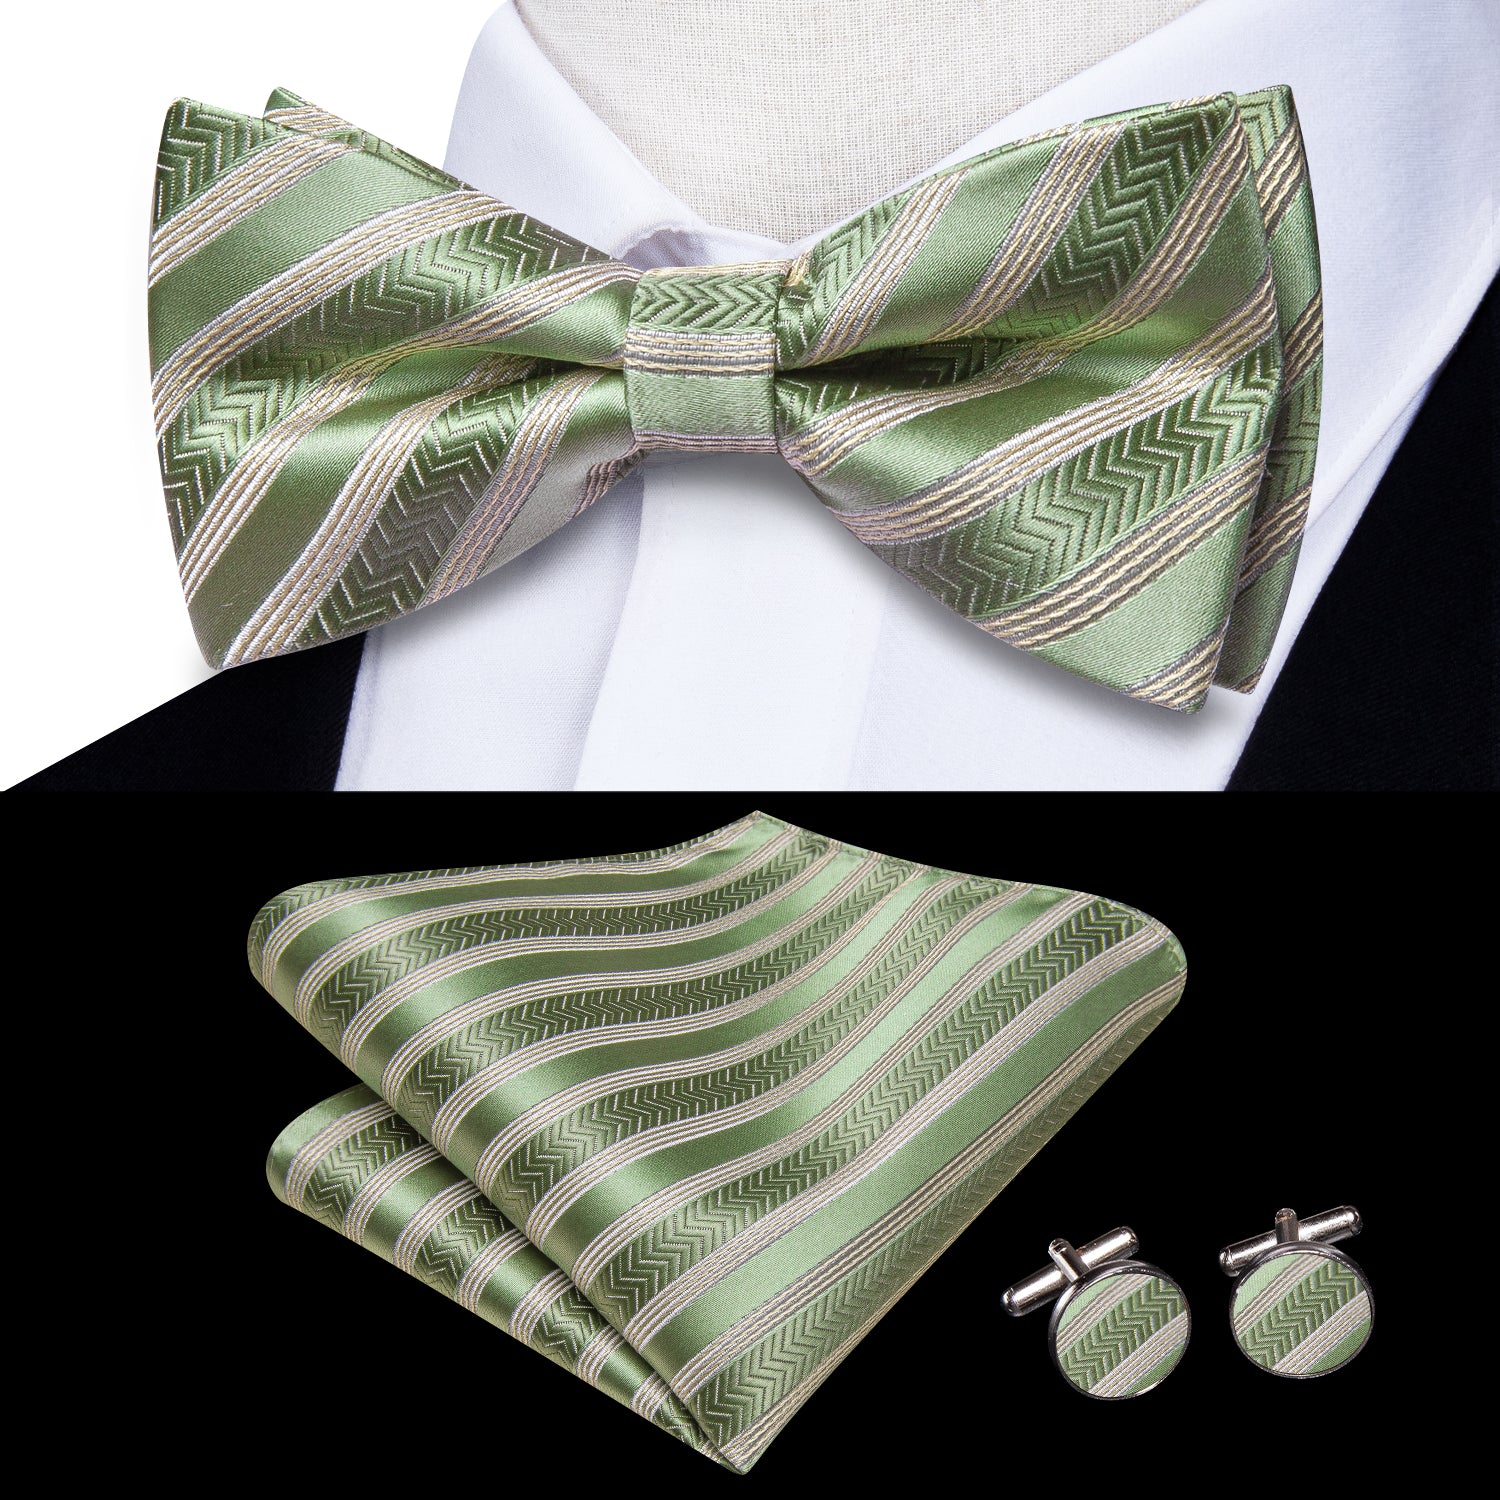 Hi-Tie Green Beige Striped Pre-tied Bow Tie Hanky Cufflinks Set